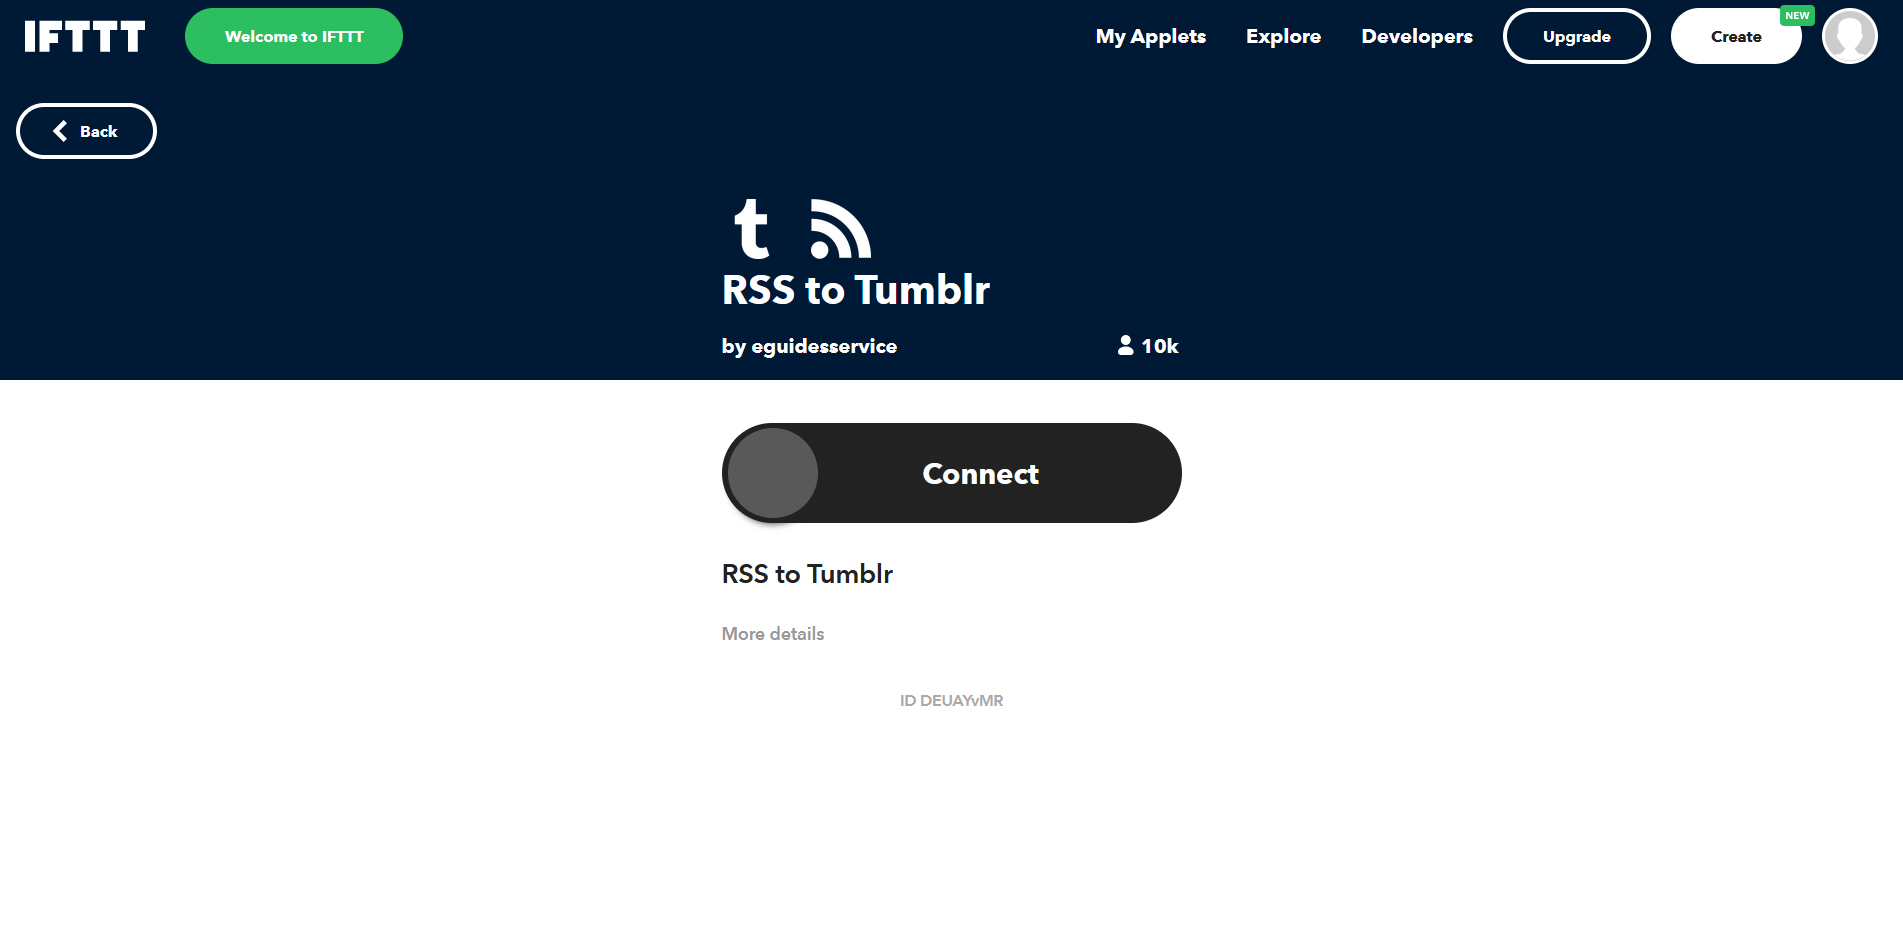 RSSとIFTTTを使ってtumblrへ自動投稿する